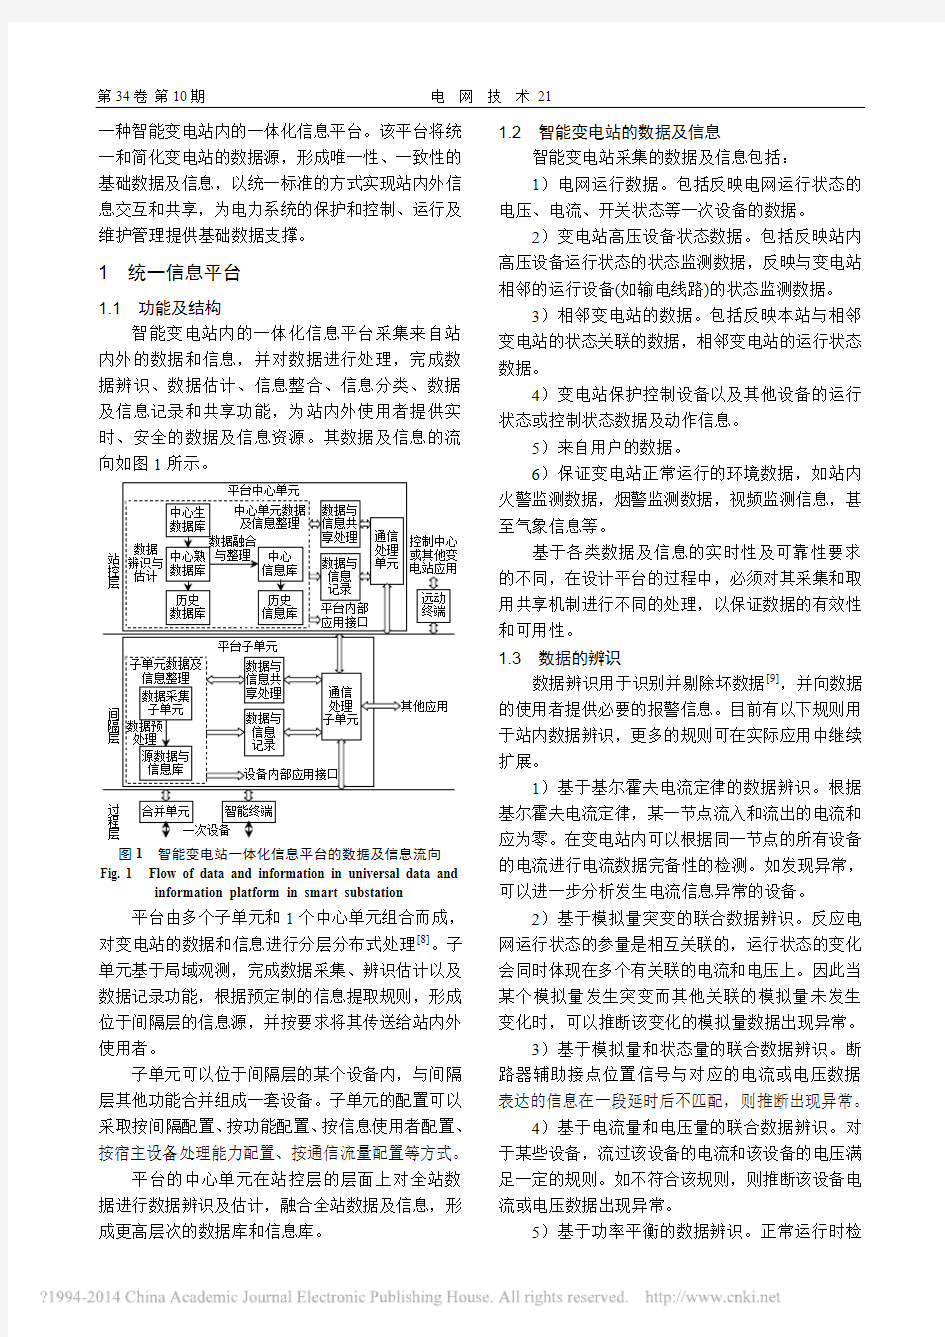 智能变电站一体化信息平台的设计_王冬青